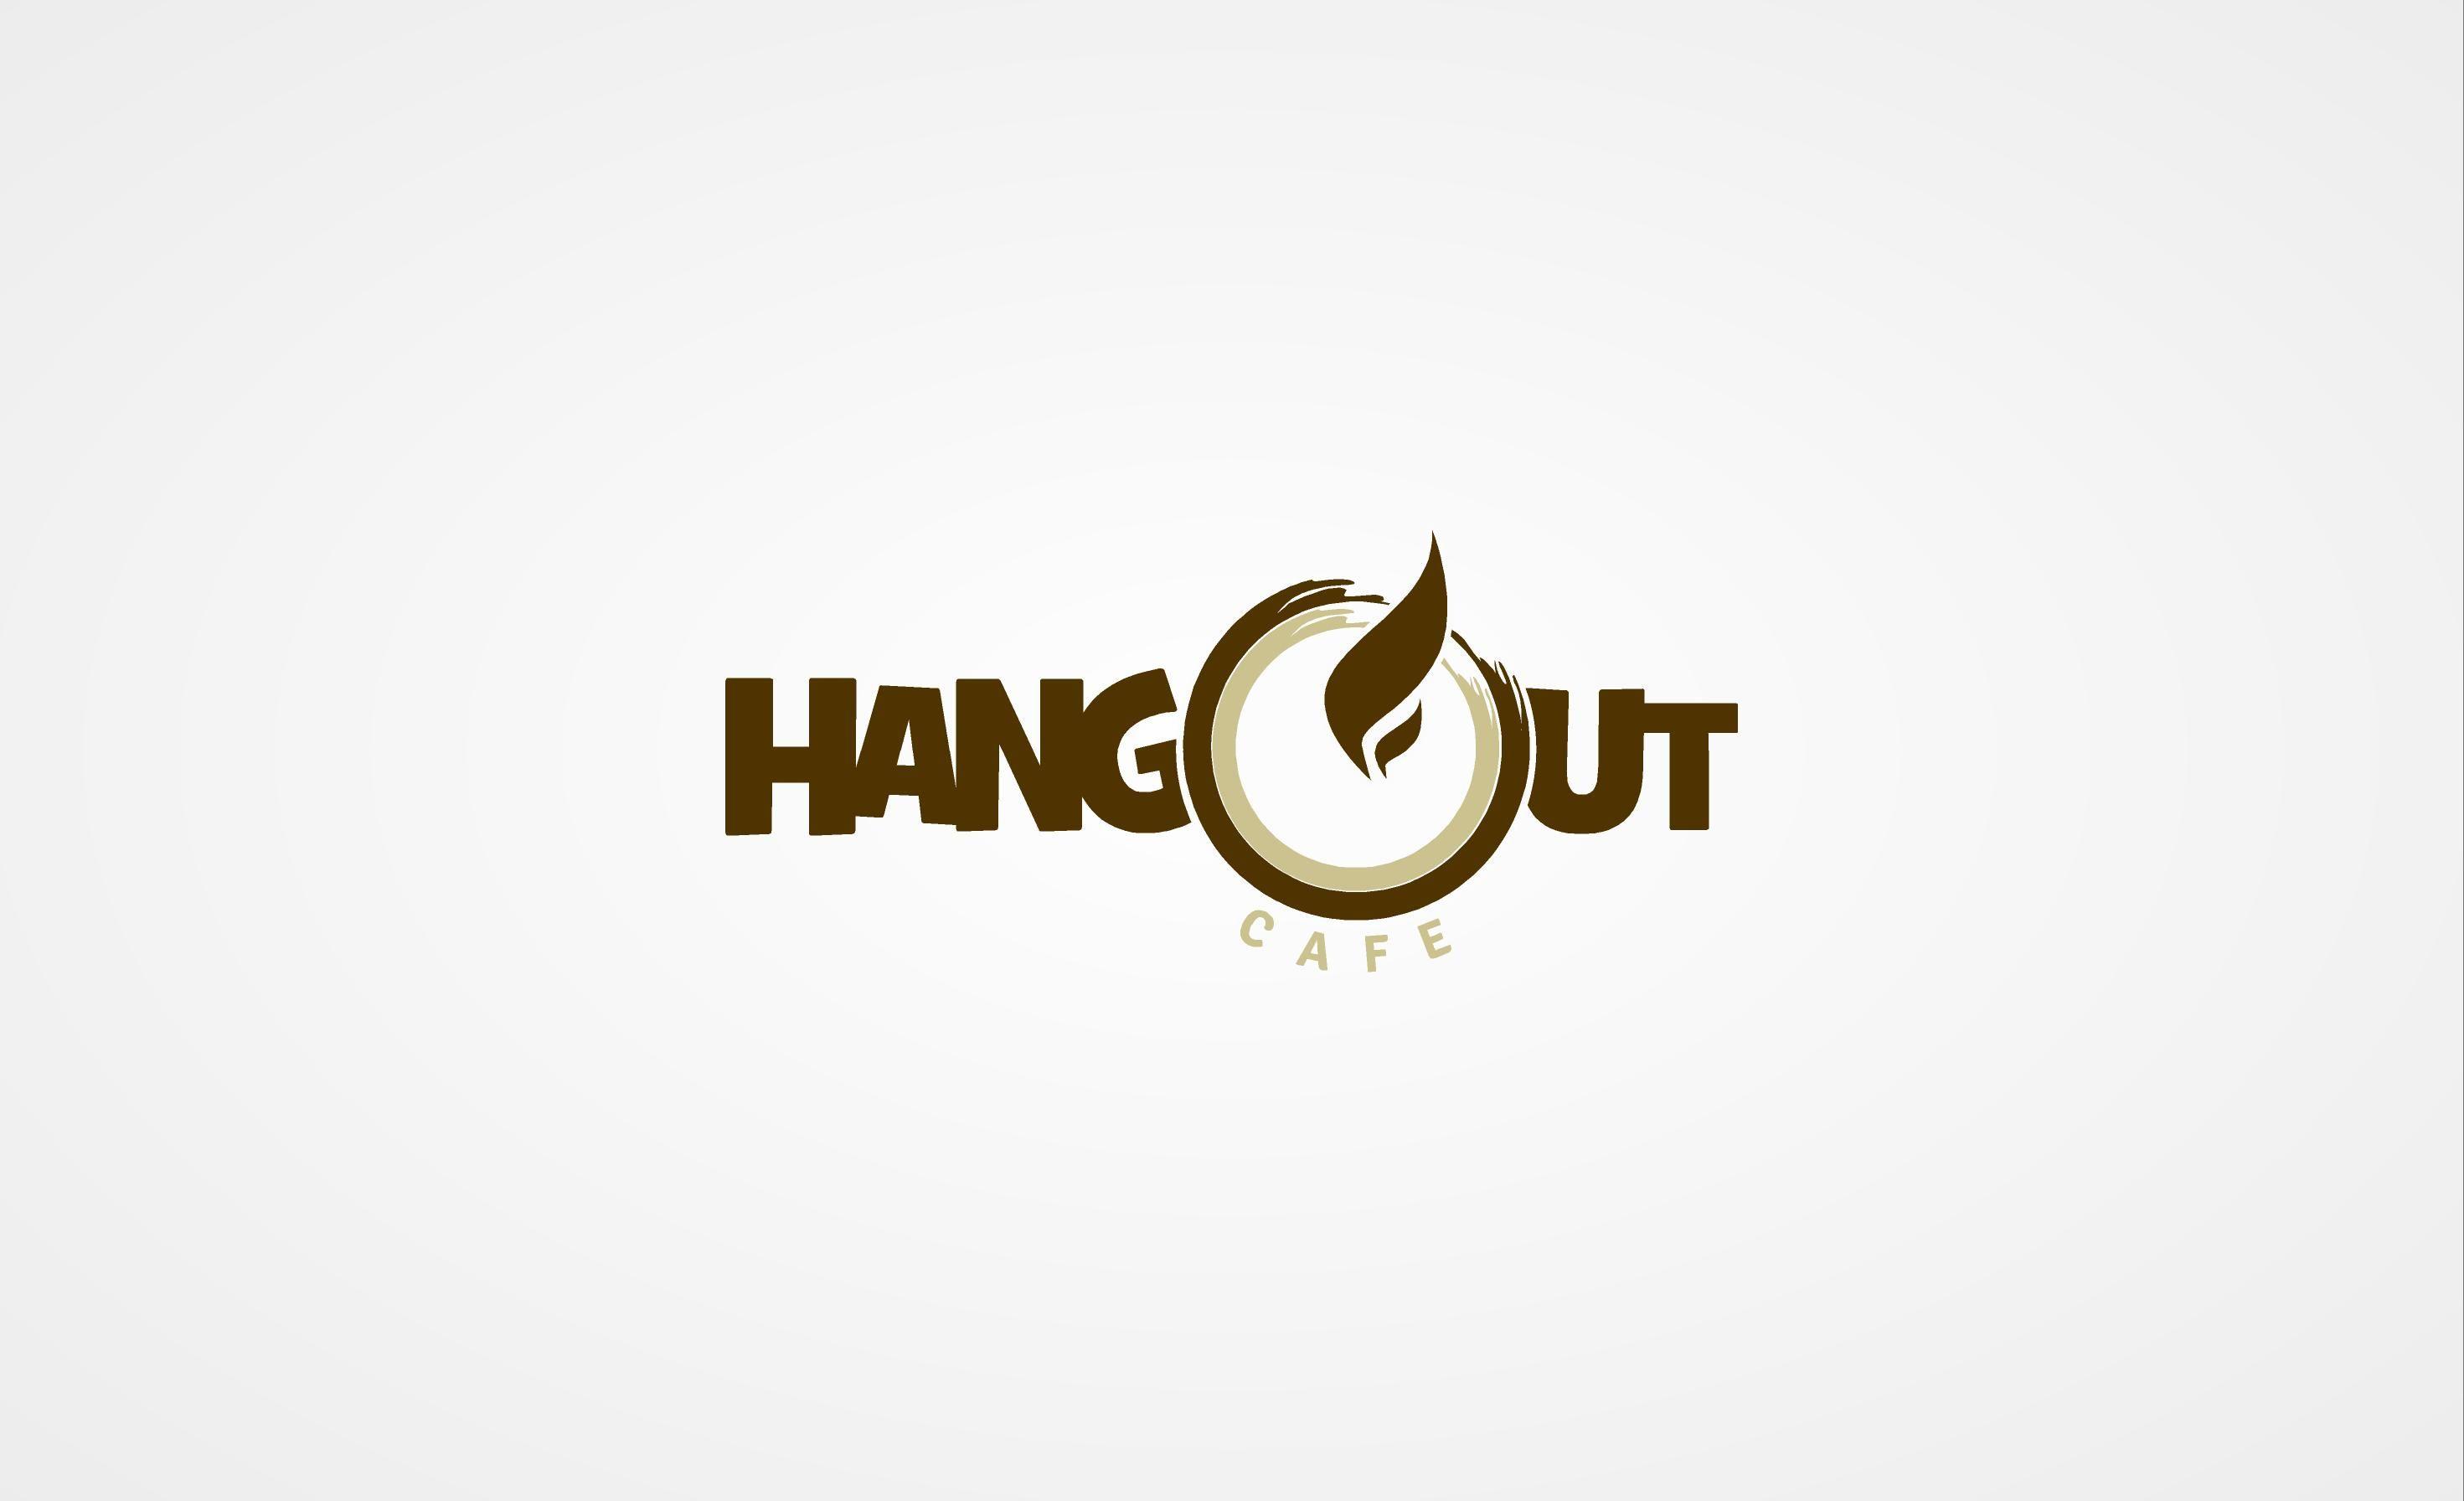 Google Hangout Logo - Sribu: Logo Design Logo Hangout Cafe Bandung